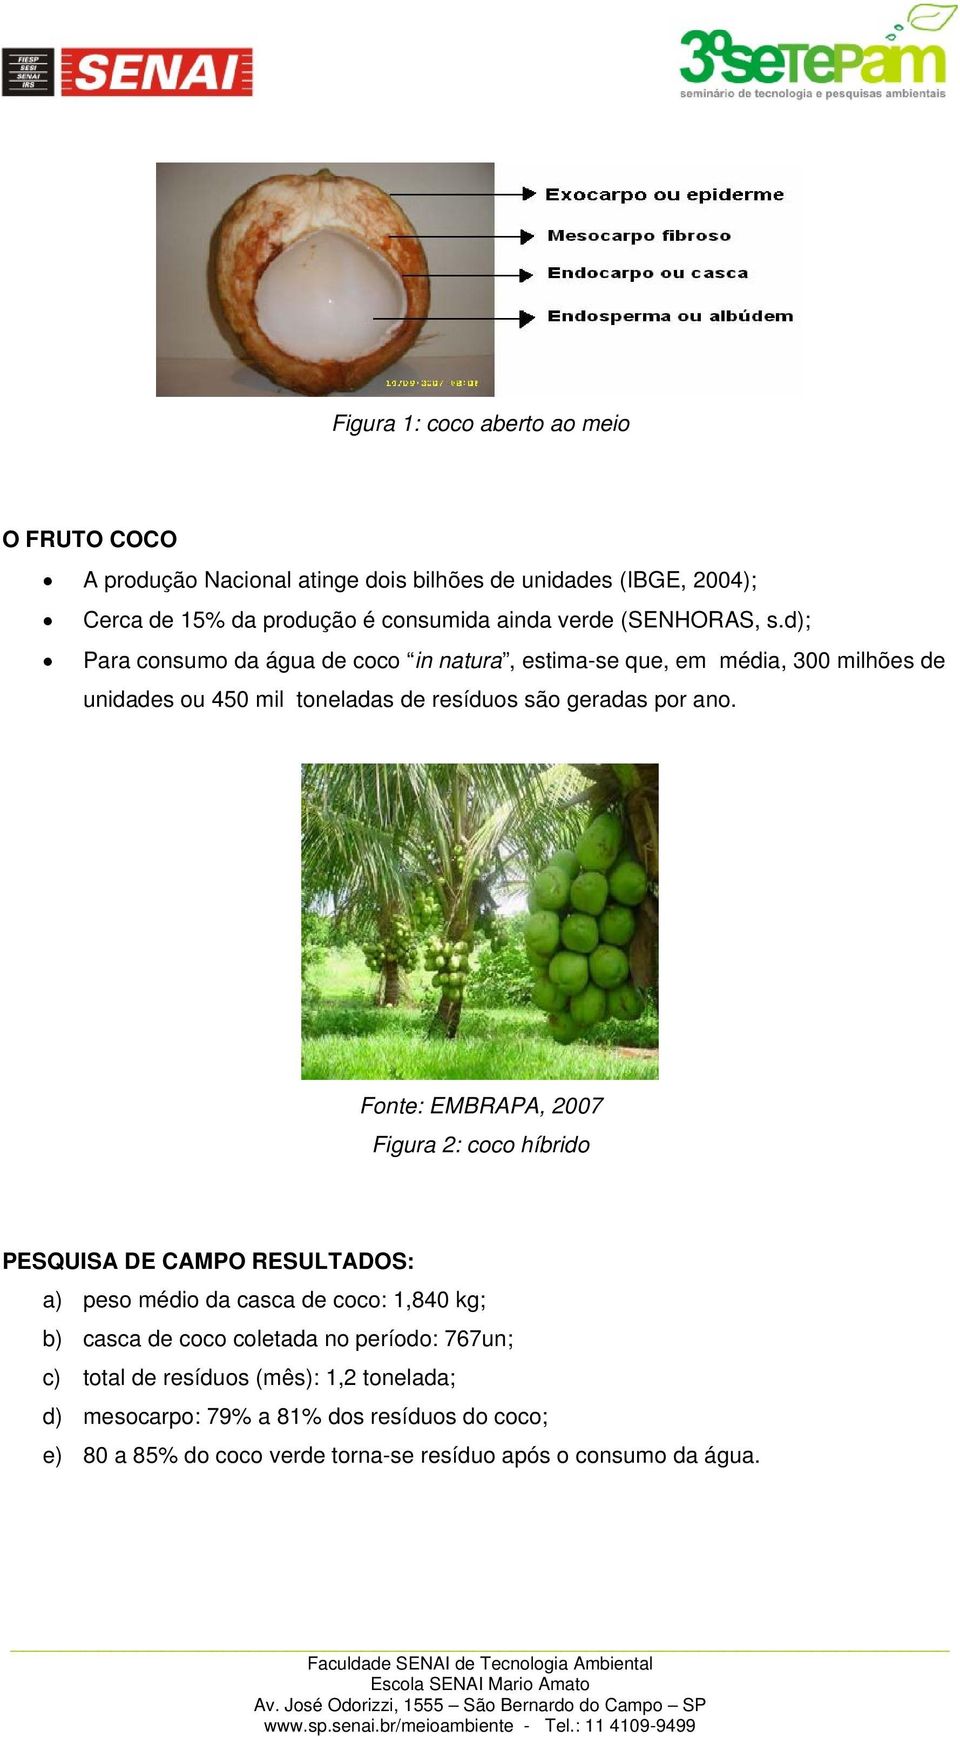 Fonte: EMBRAPA, 2007 Figura 2: coco híbrido PESQUISA DE CAMPO RESULTADOS: a) peso médio da casca de coco: 1,840 kg; b) casca de coco coletada no período: